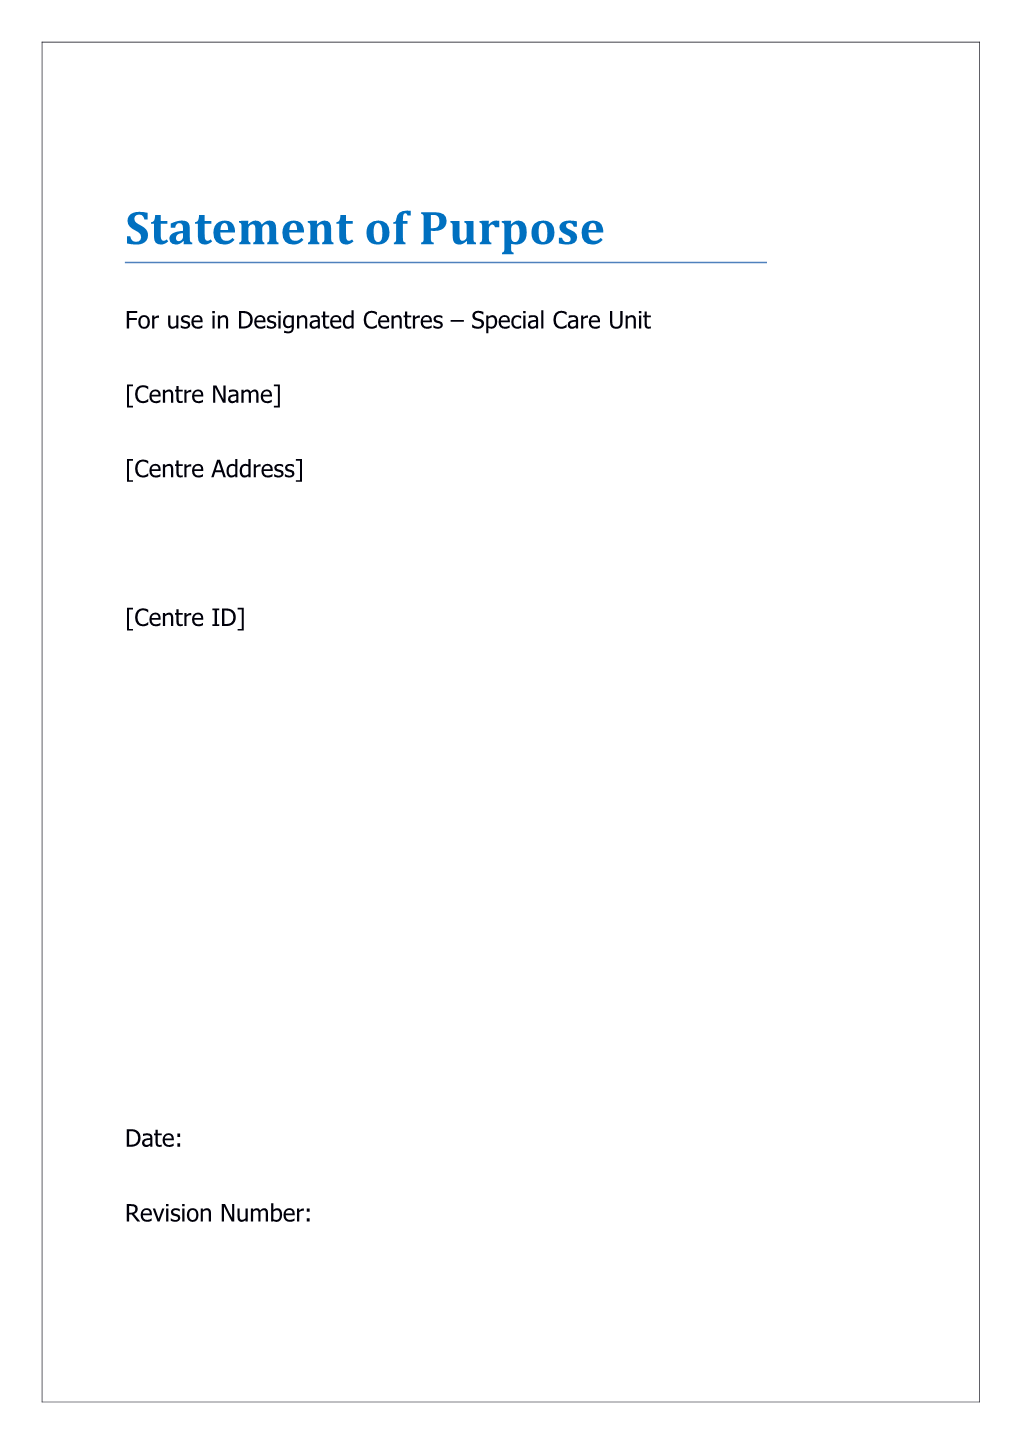 Statement of Purpose Template SCU